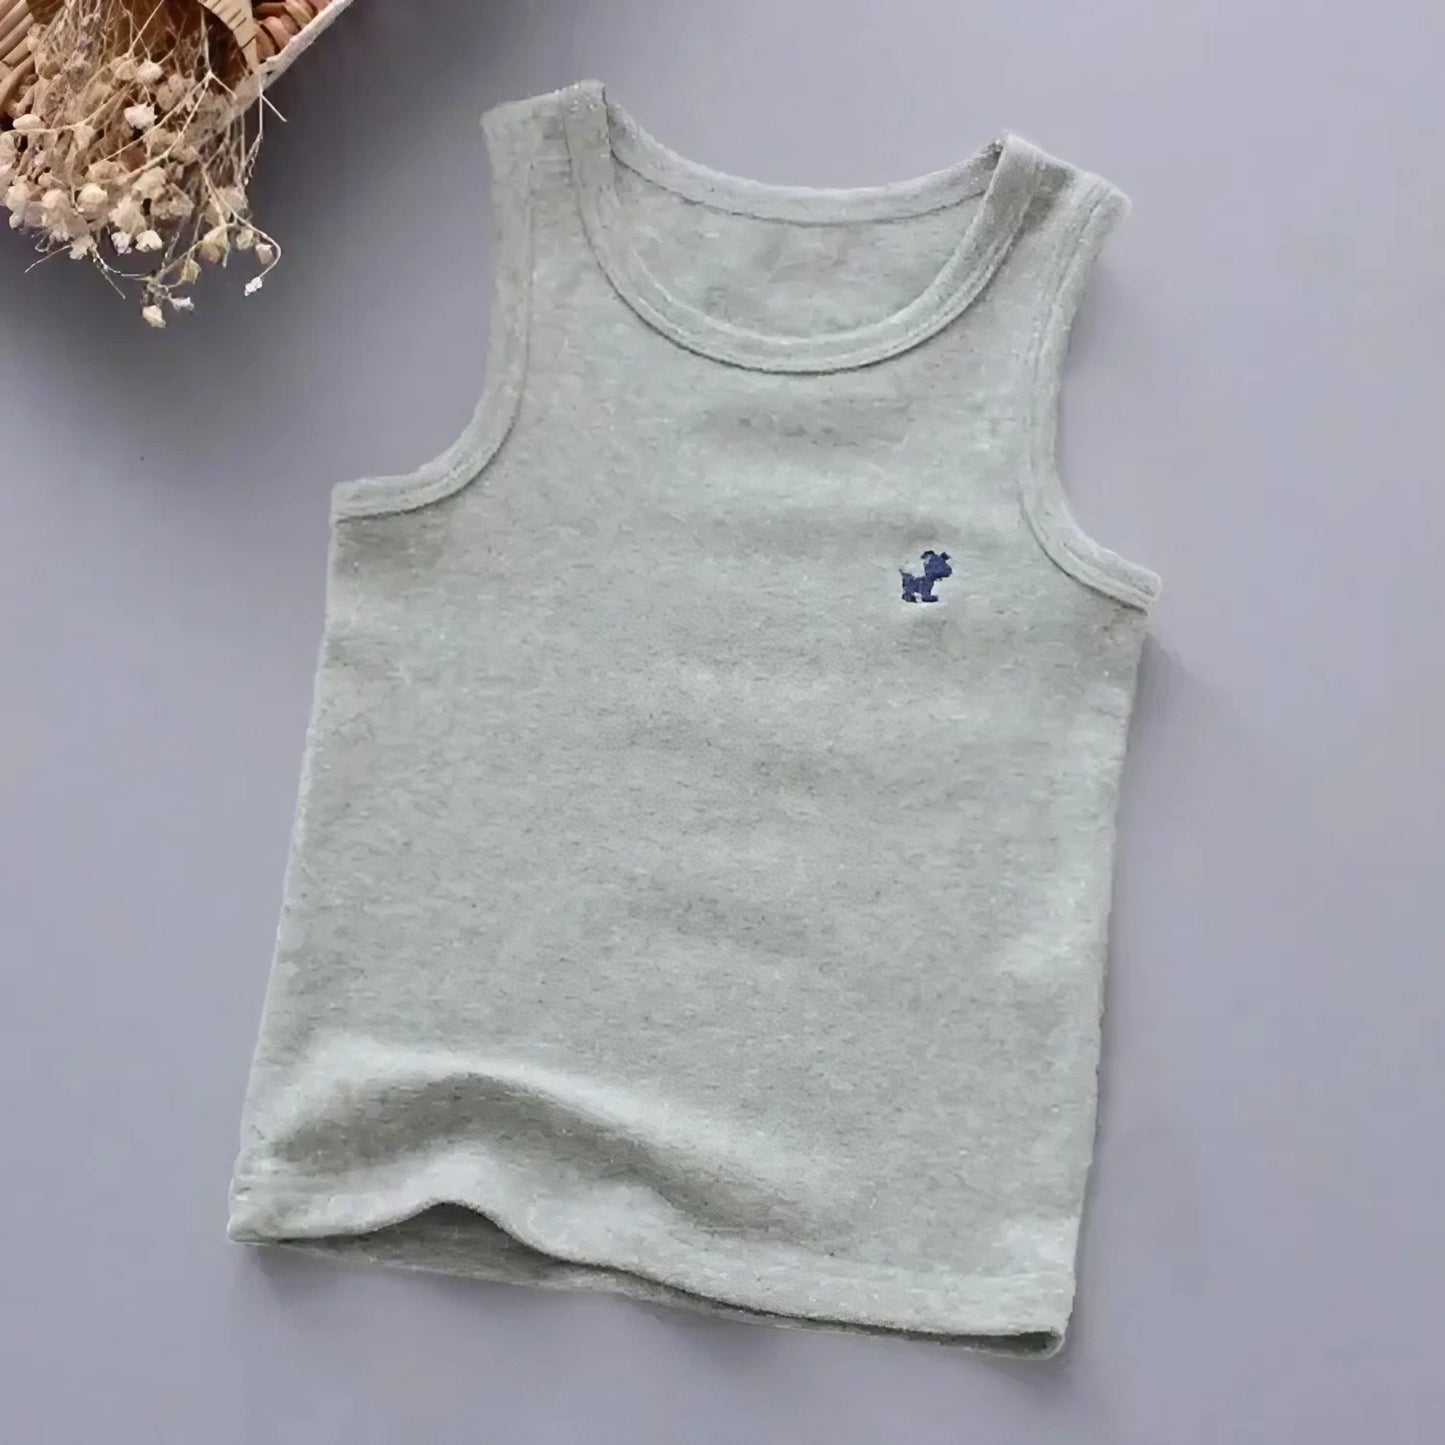 Koszulka dziewczęca na grubych ramiączkach z małym logo pieska - Miziu.pl